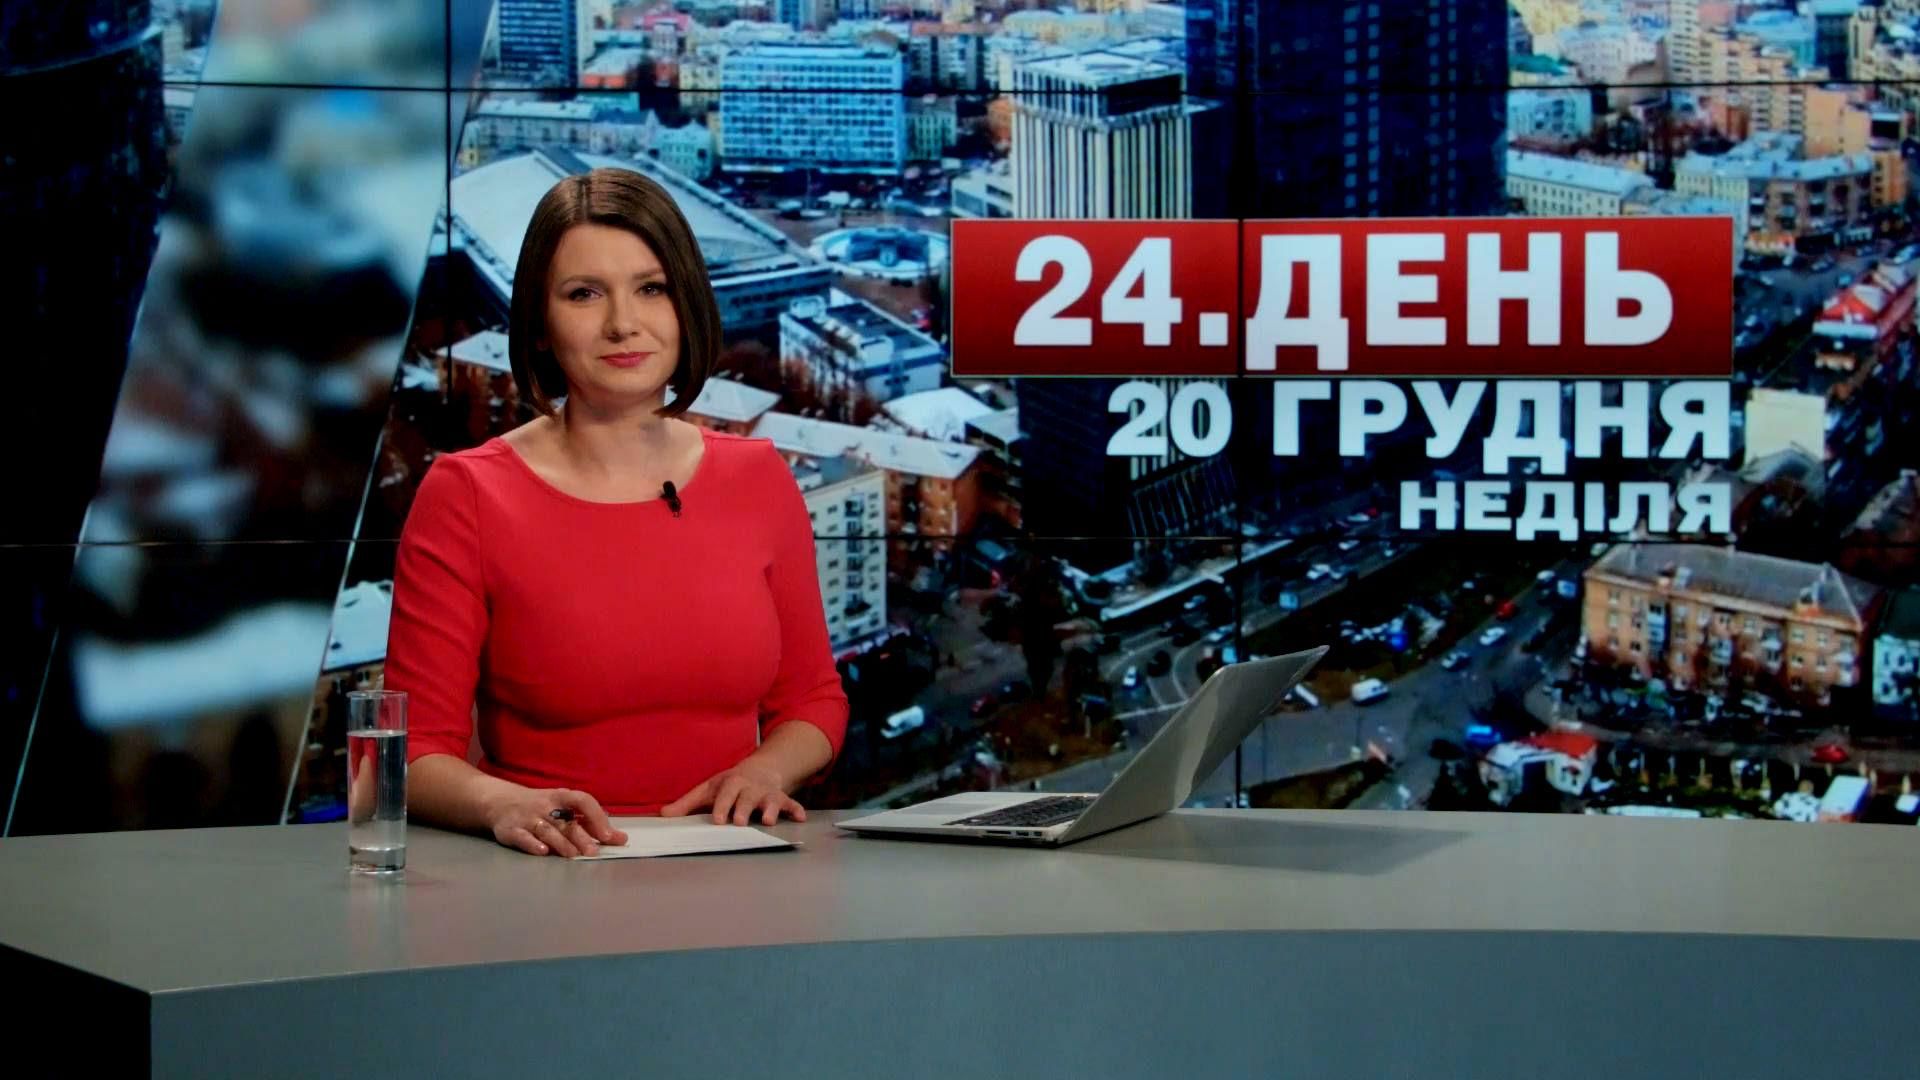 Выпуск новостей 20 декабря по состоянию на 14:00 - 20 декабря 2015 - Телеканал новин 24